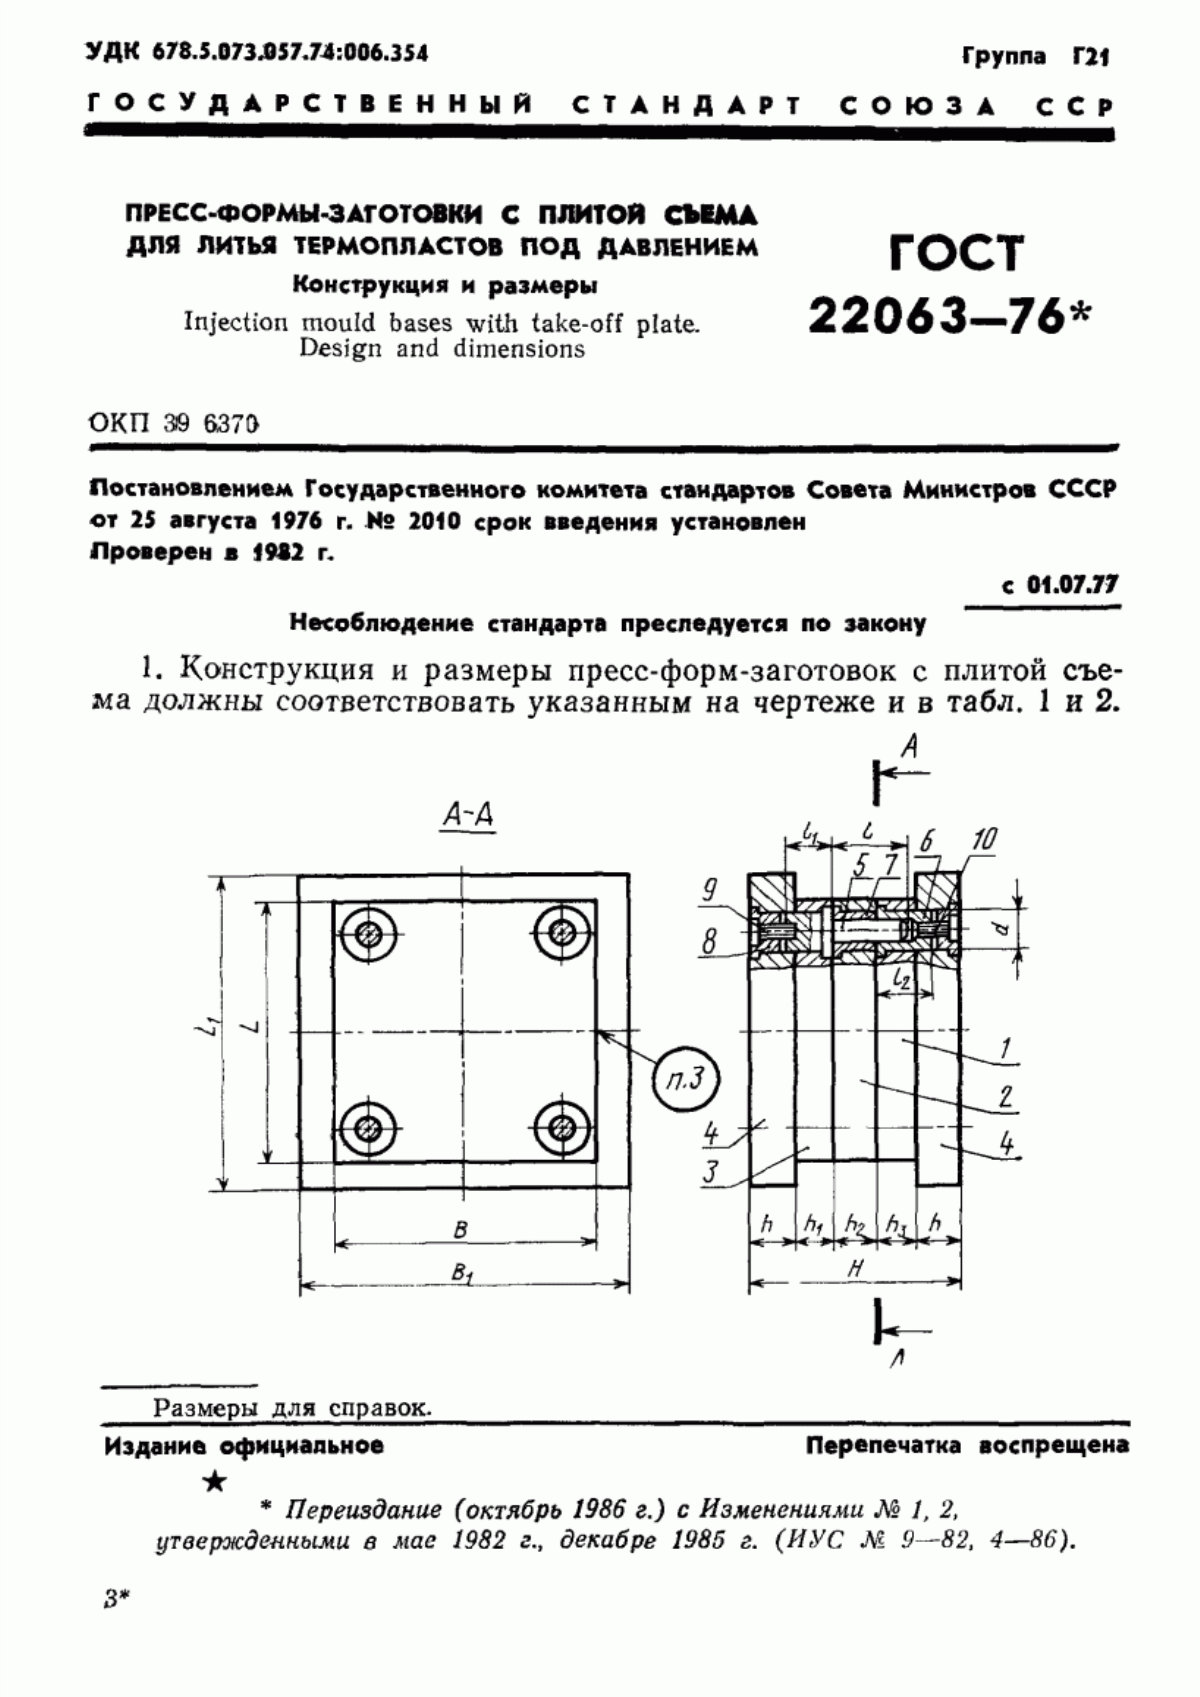 ГОСТ 22063-76 Пресс-формы-заготовки с плитой съема для литья термопластов под давлением. Конструкция и размеры